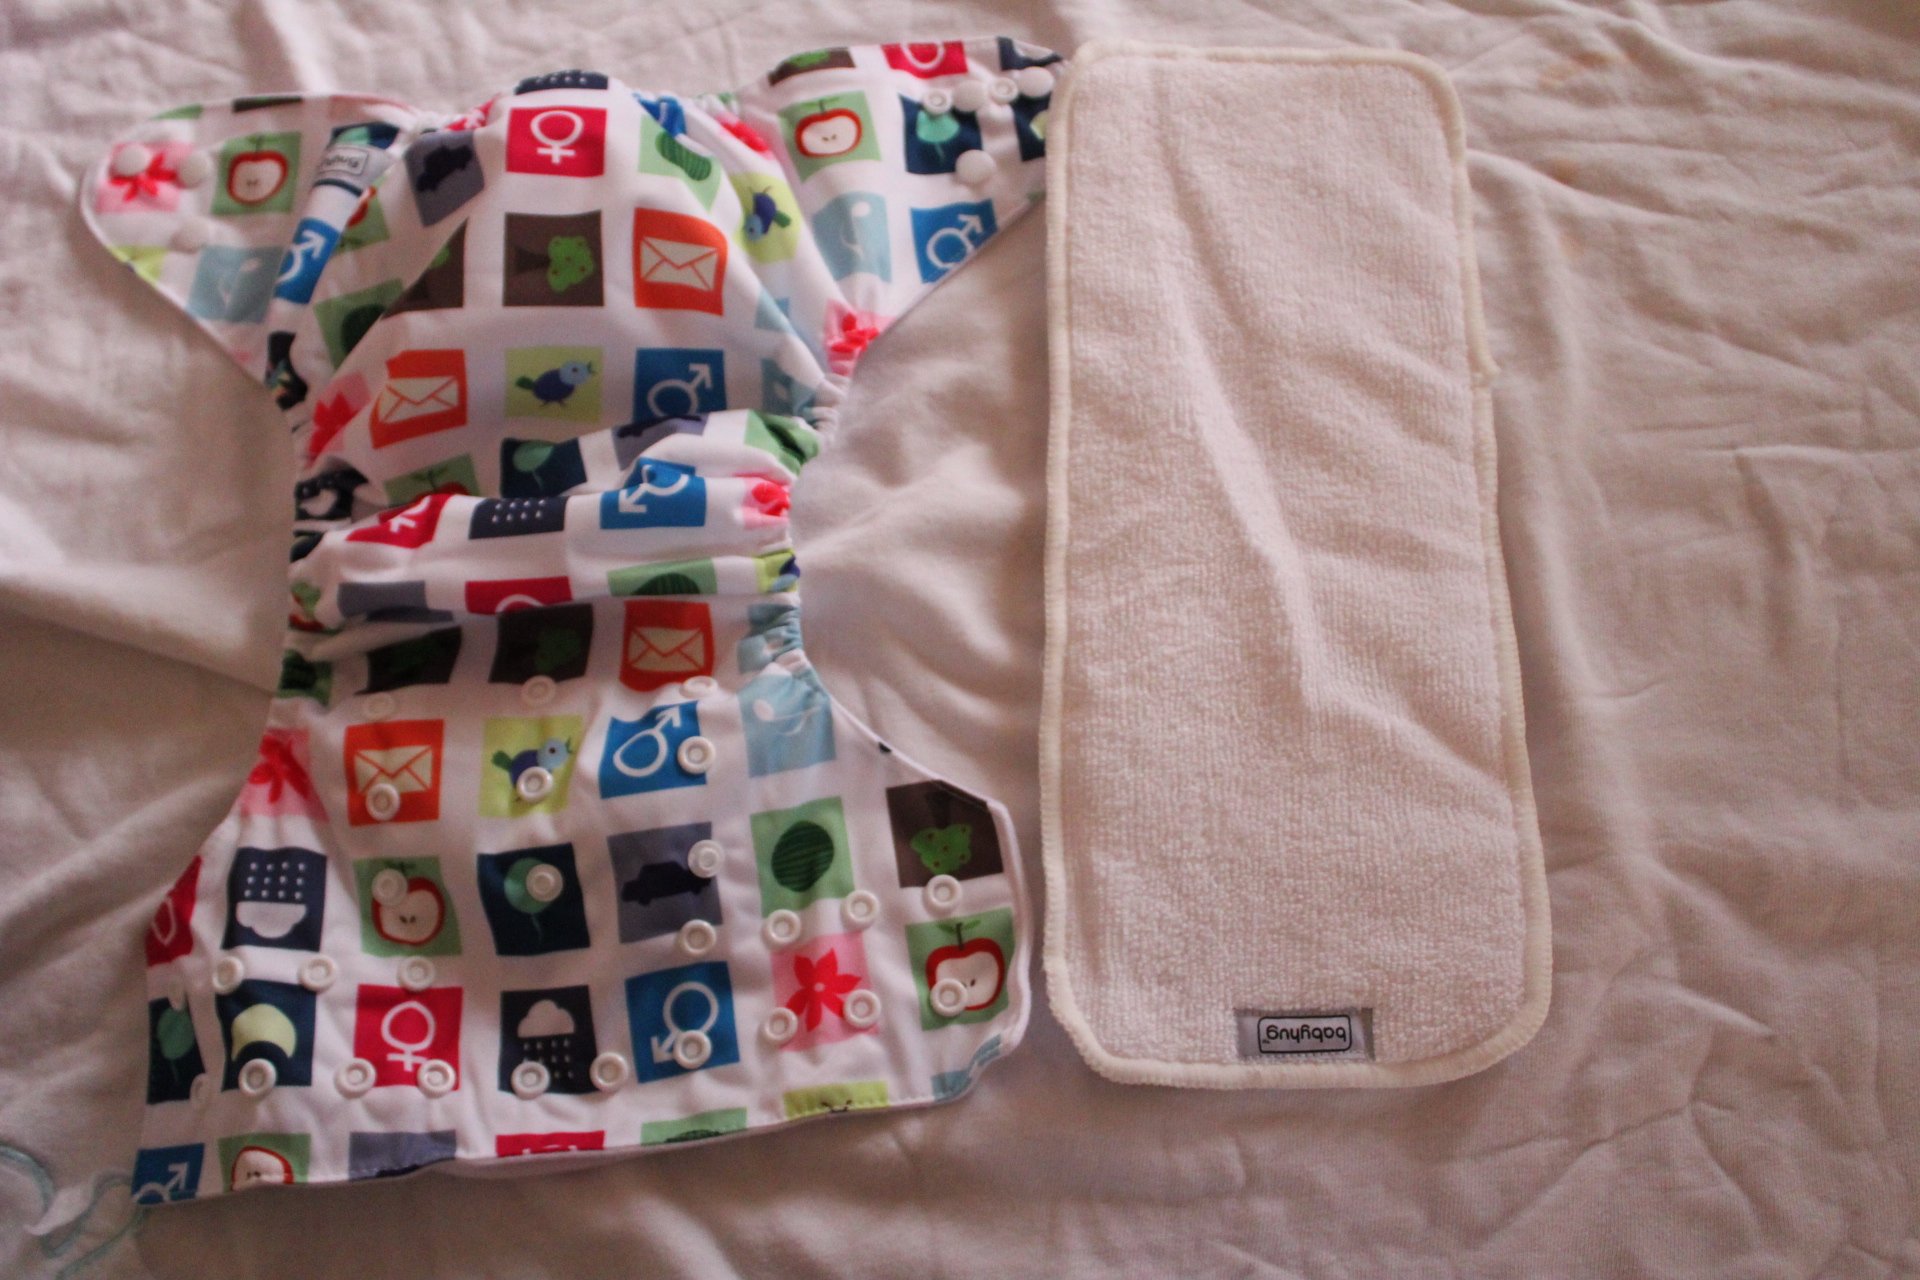 babyhug cloth nappies